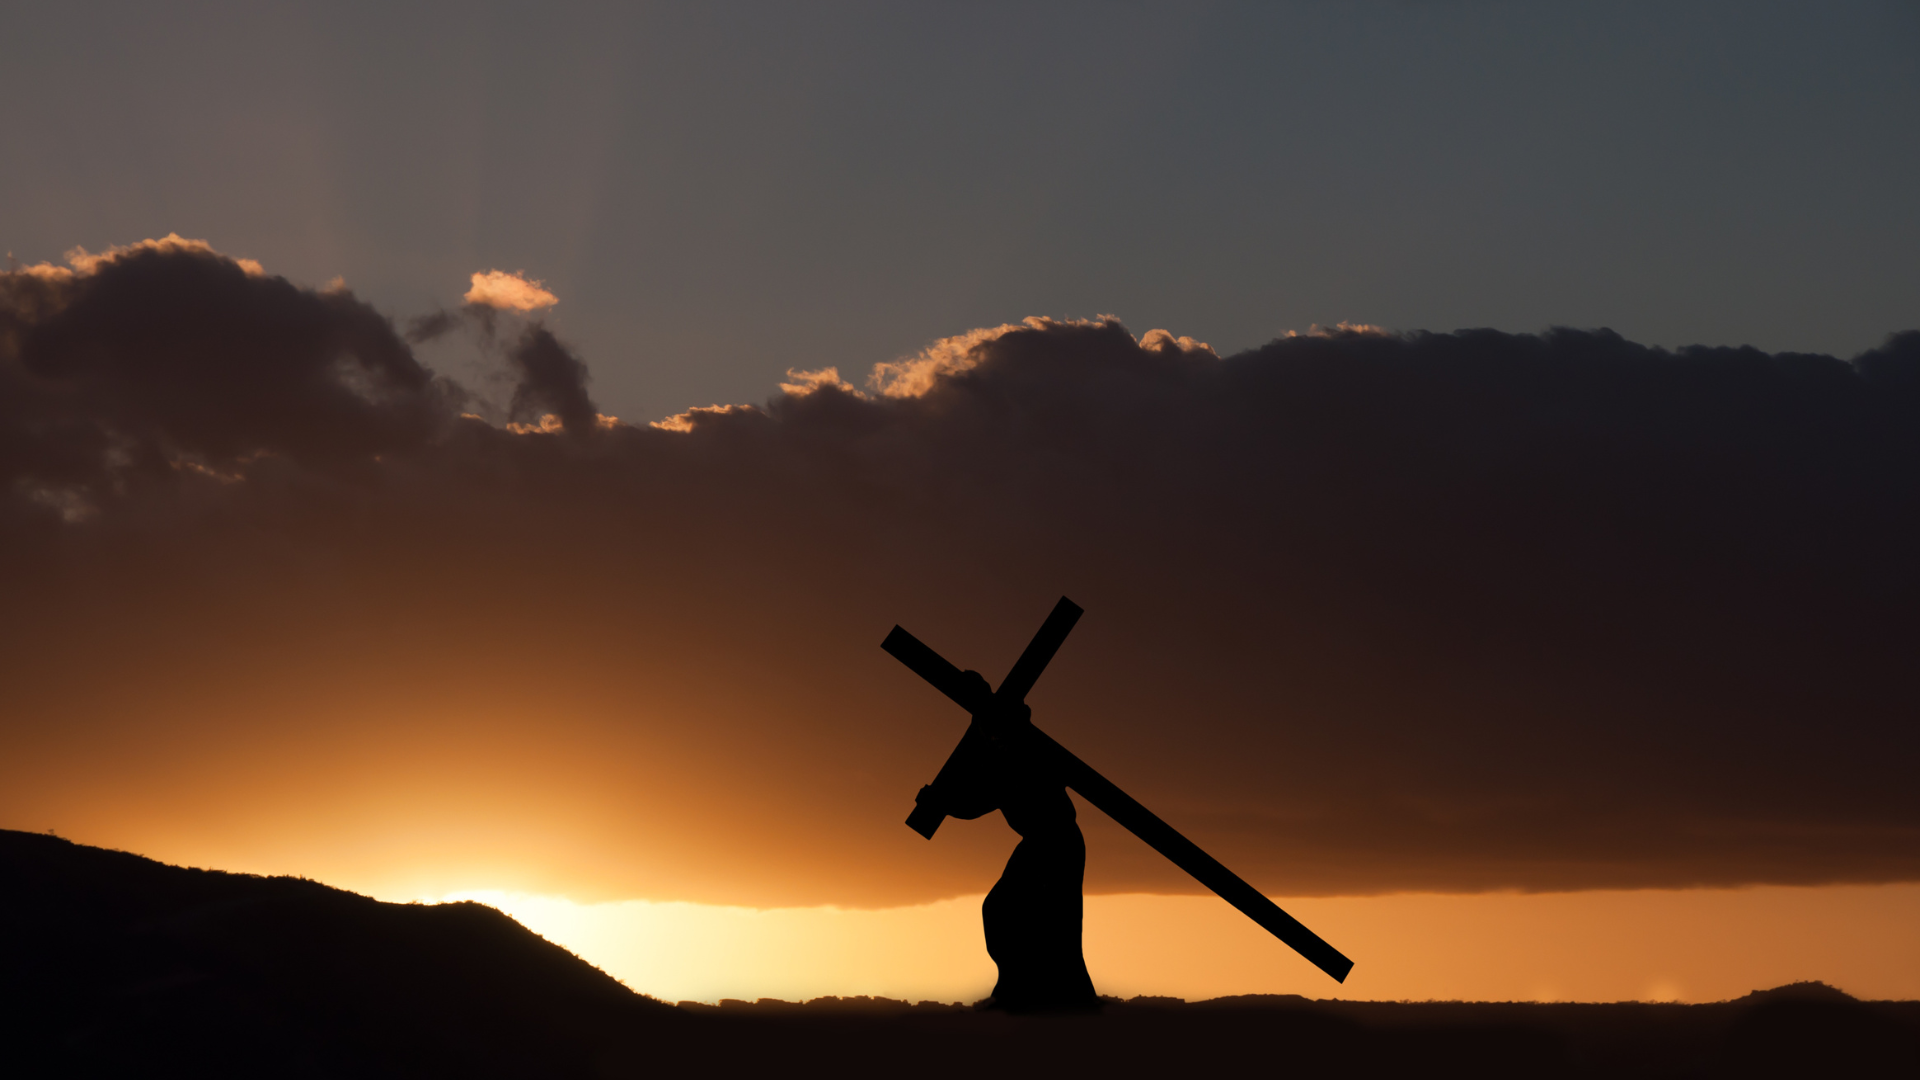 Paisagem alaranjada de fundo e Jesus carregando a cruz ao longe.